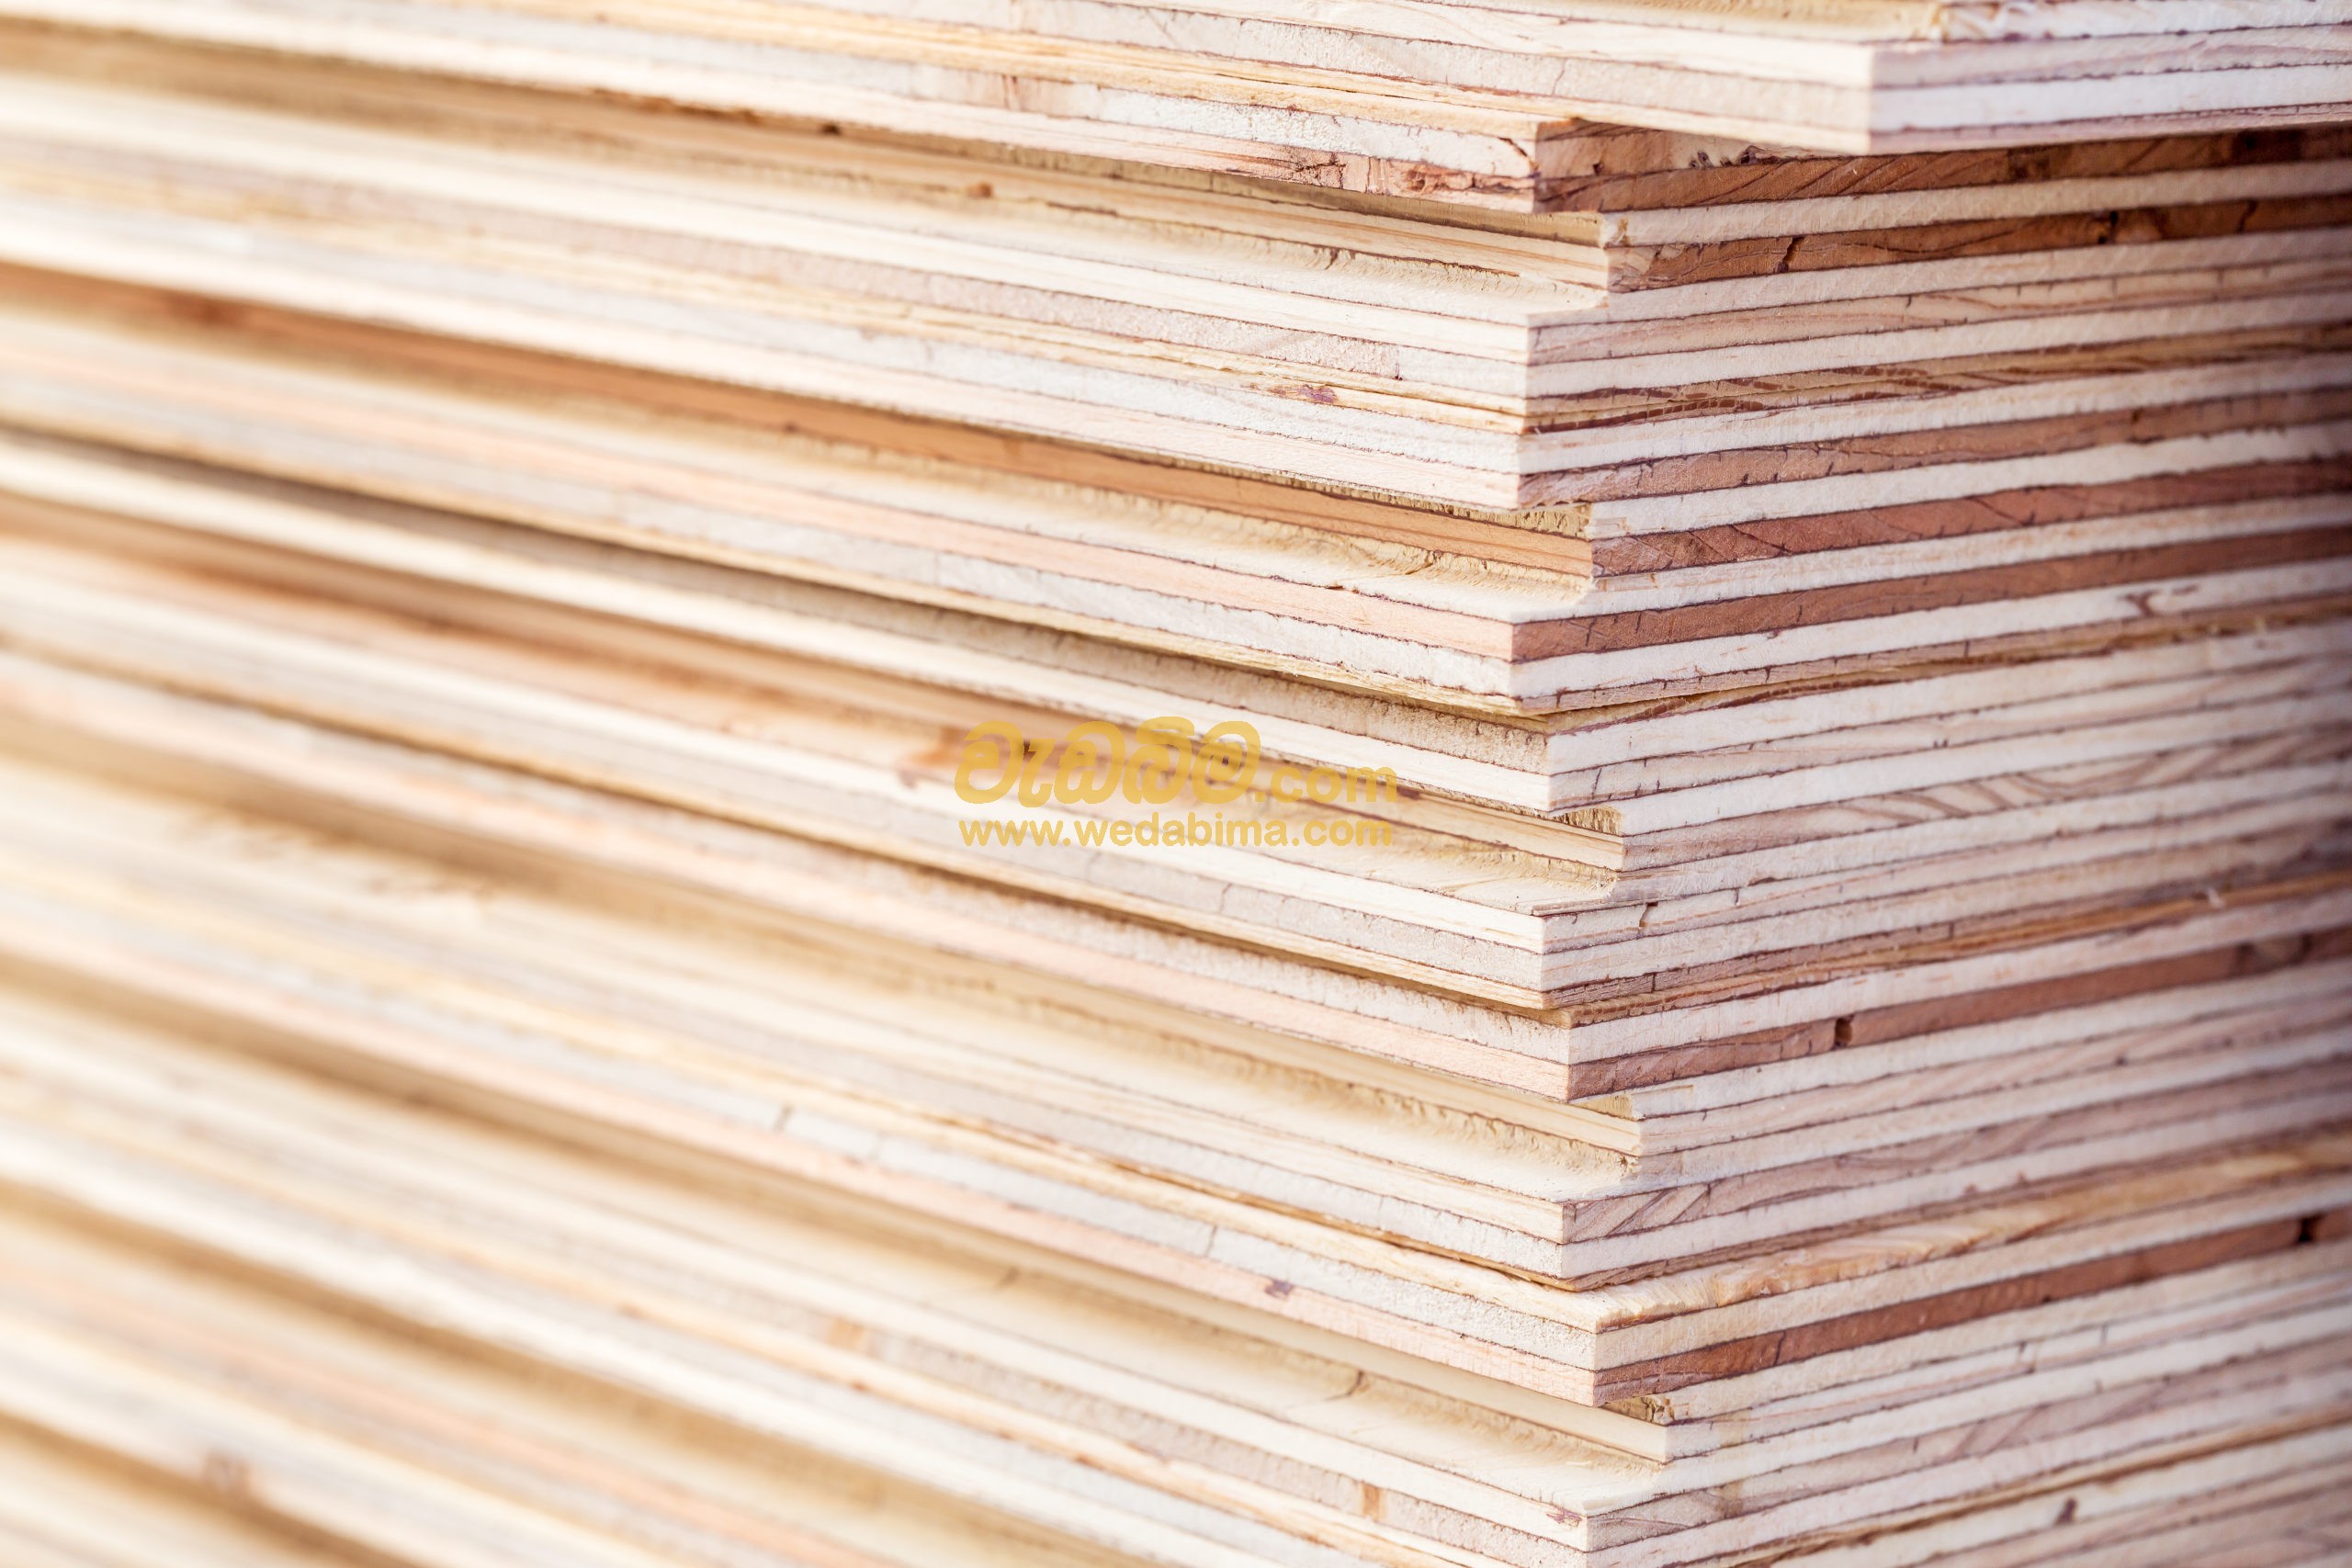 Cover image for Plywood price in srilanka